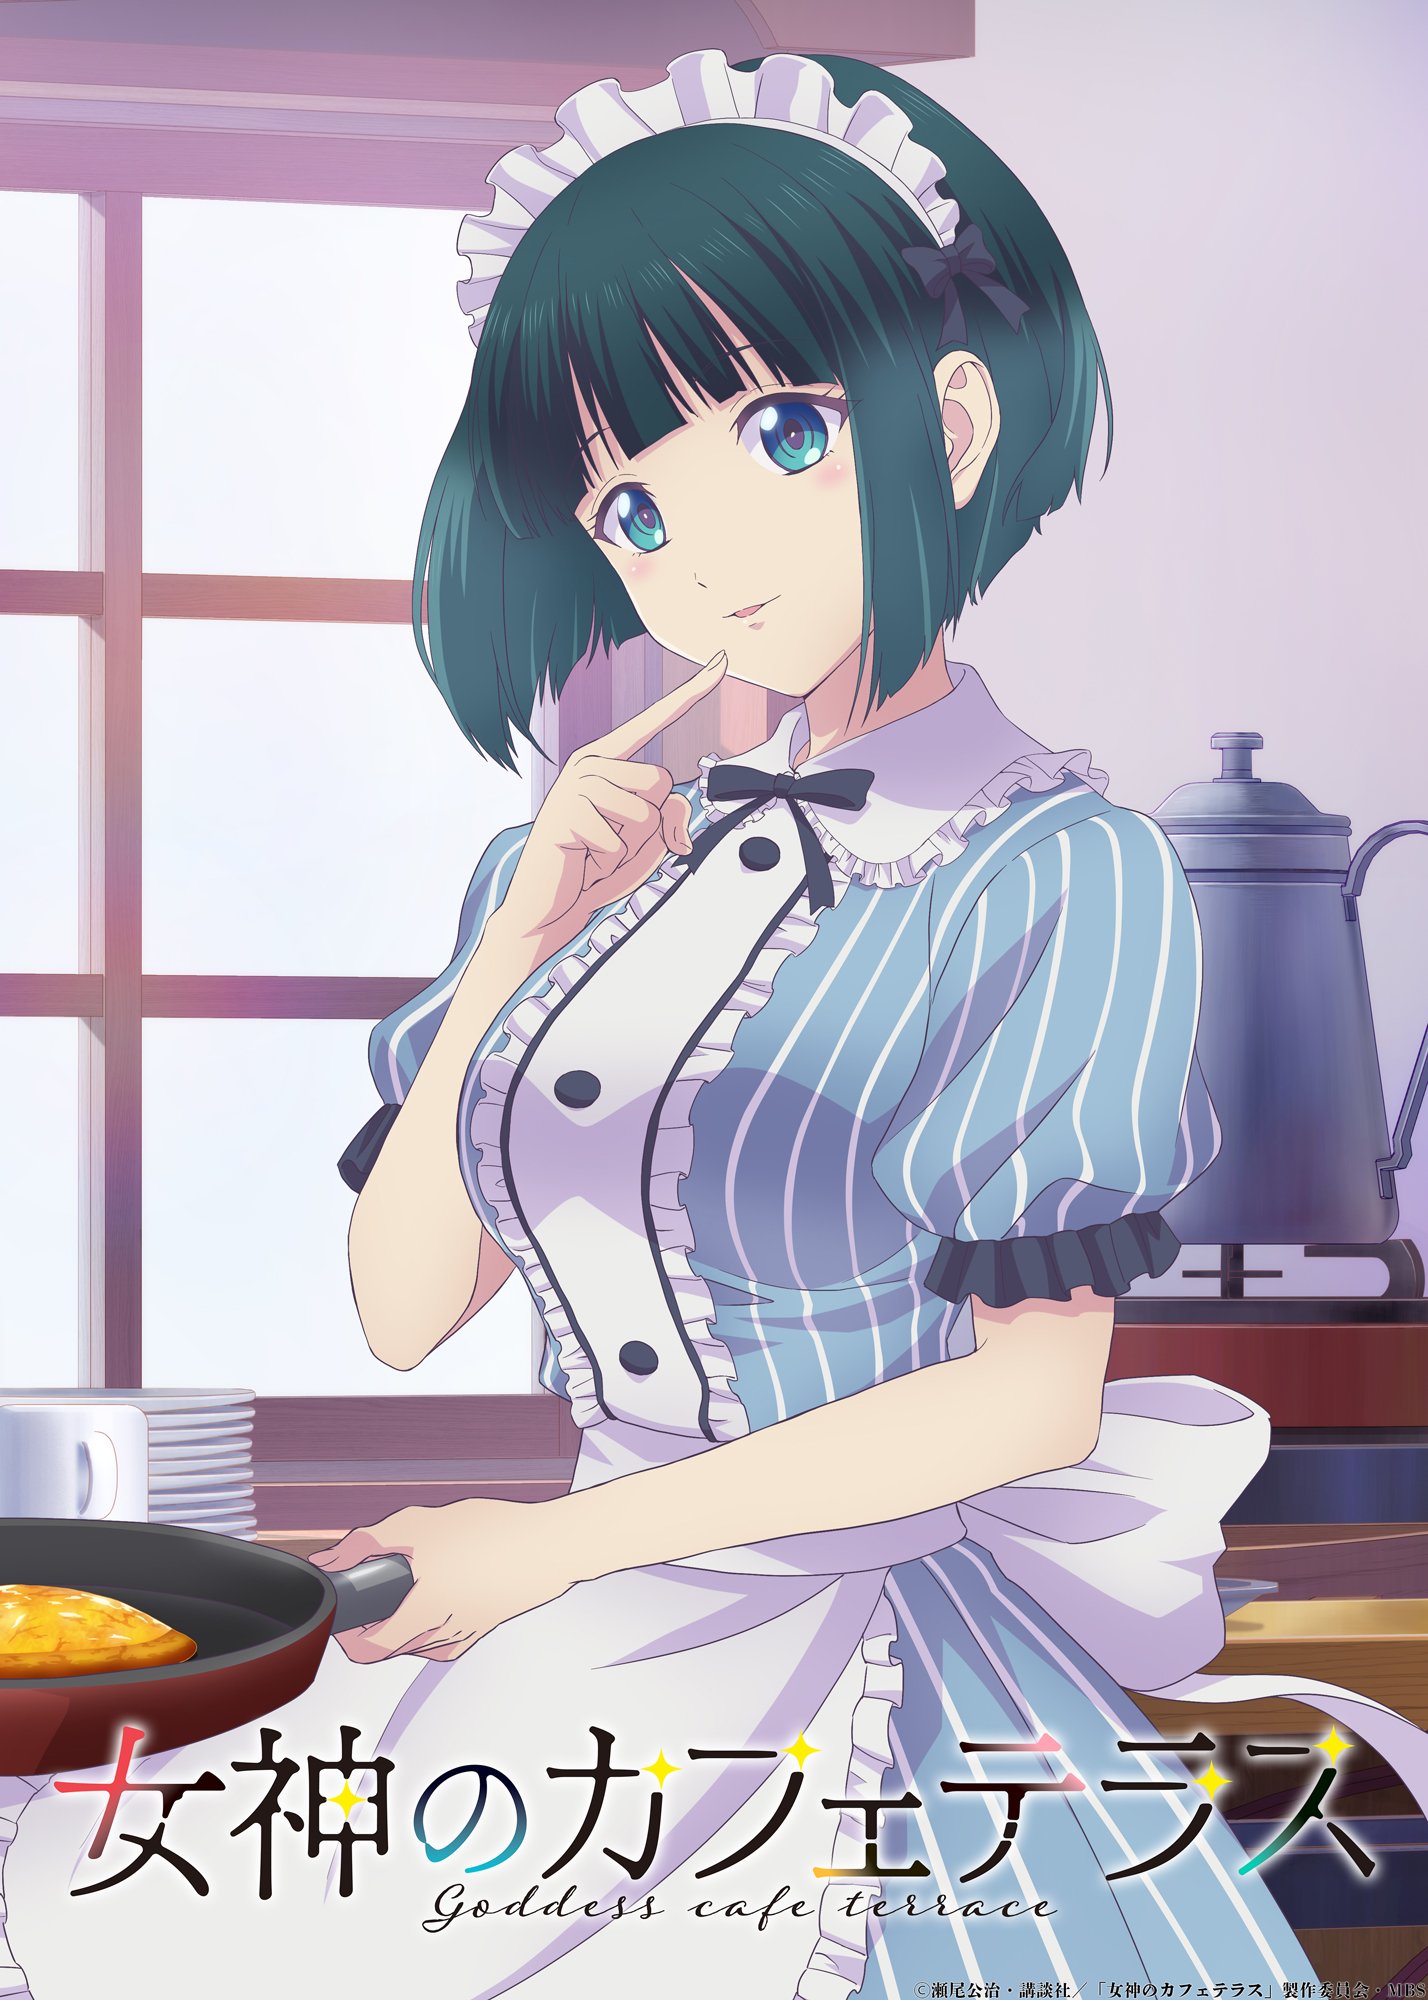 Anime-byme on X:  Shiragiku & Ouka  Megami no Café Terrace (The